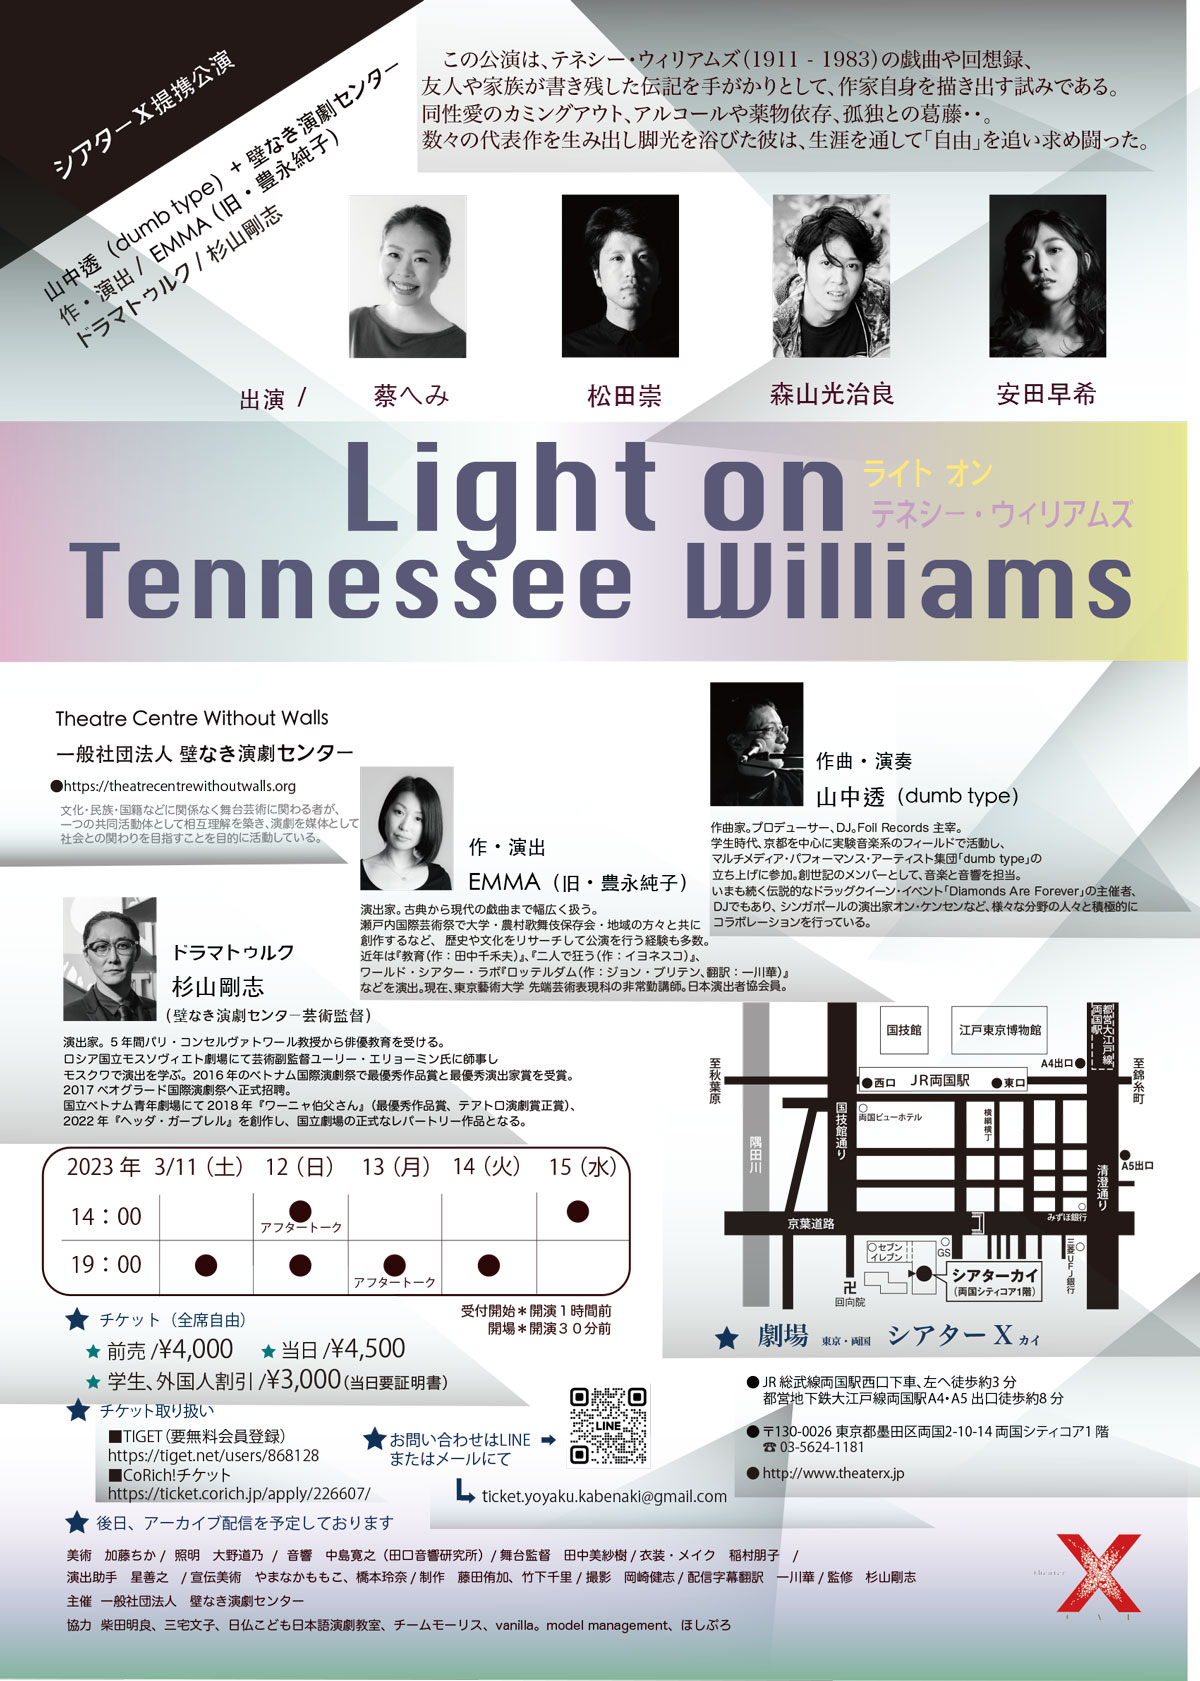 壁なき演劇センター『Light on Tennessee Williams』